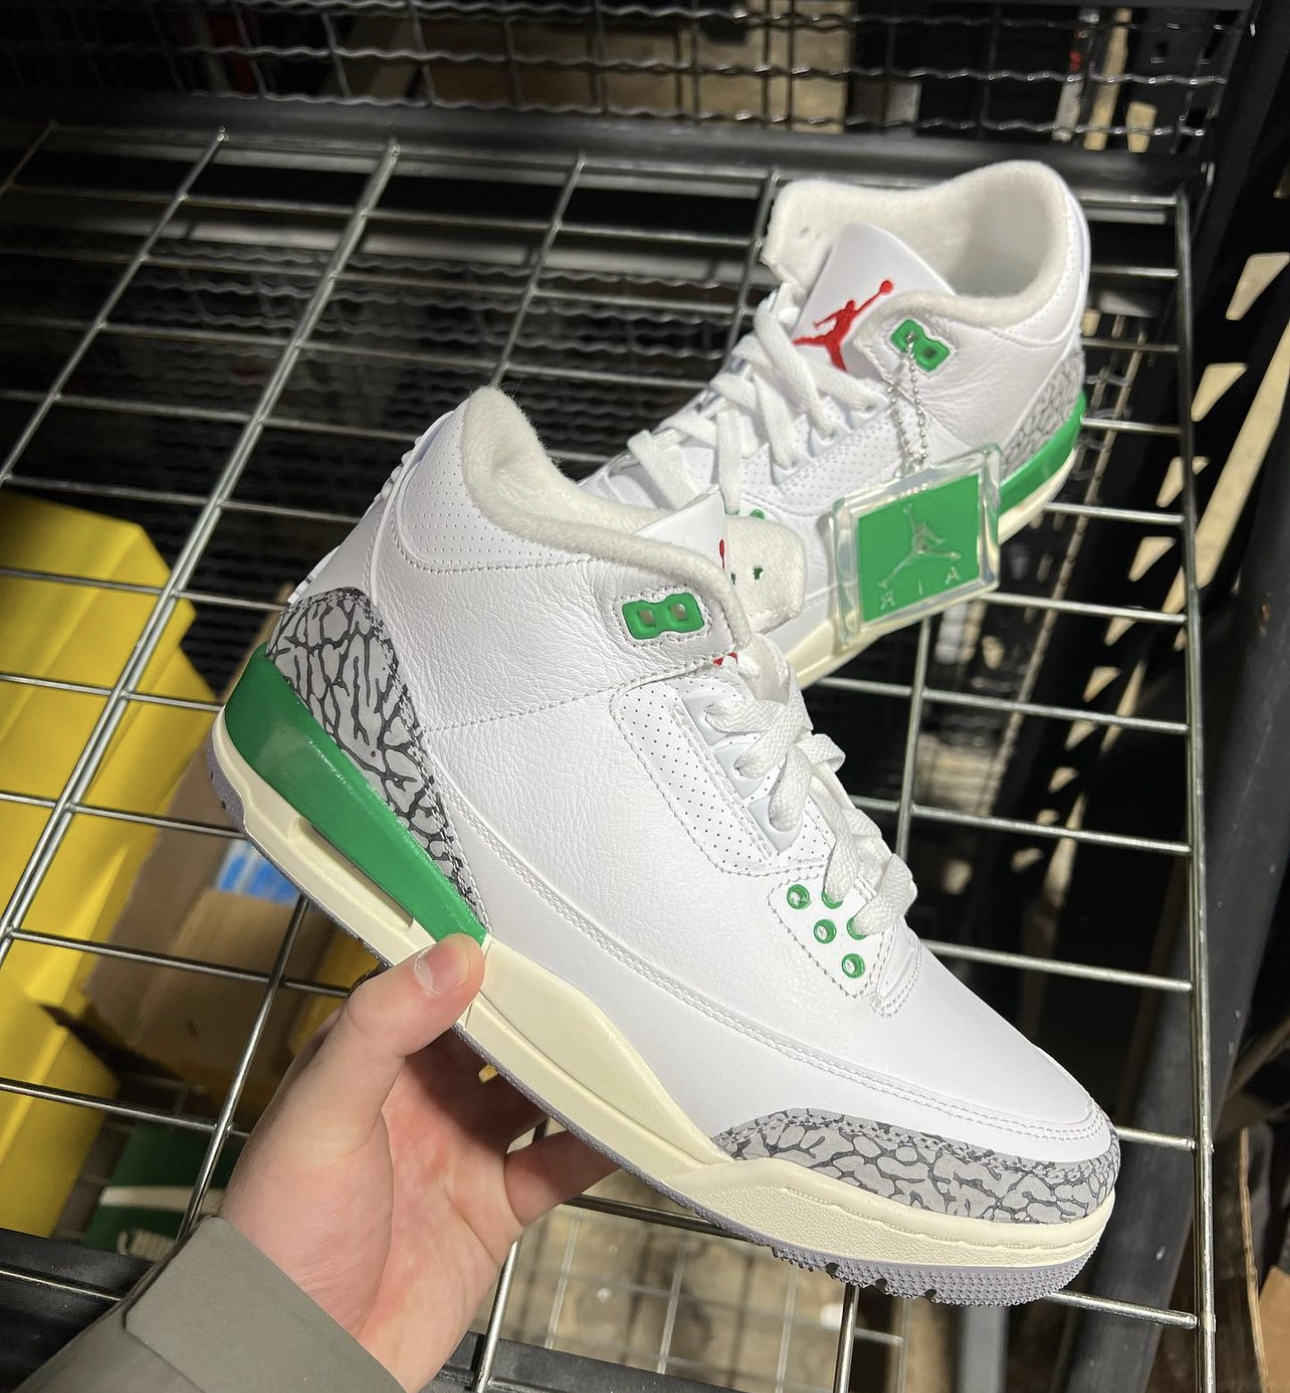 An initial look at the “Lucky Green”Air Jordan 3 Sneaker Shop Talk